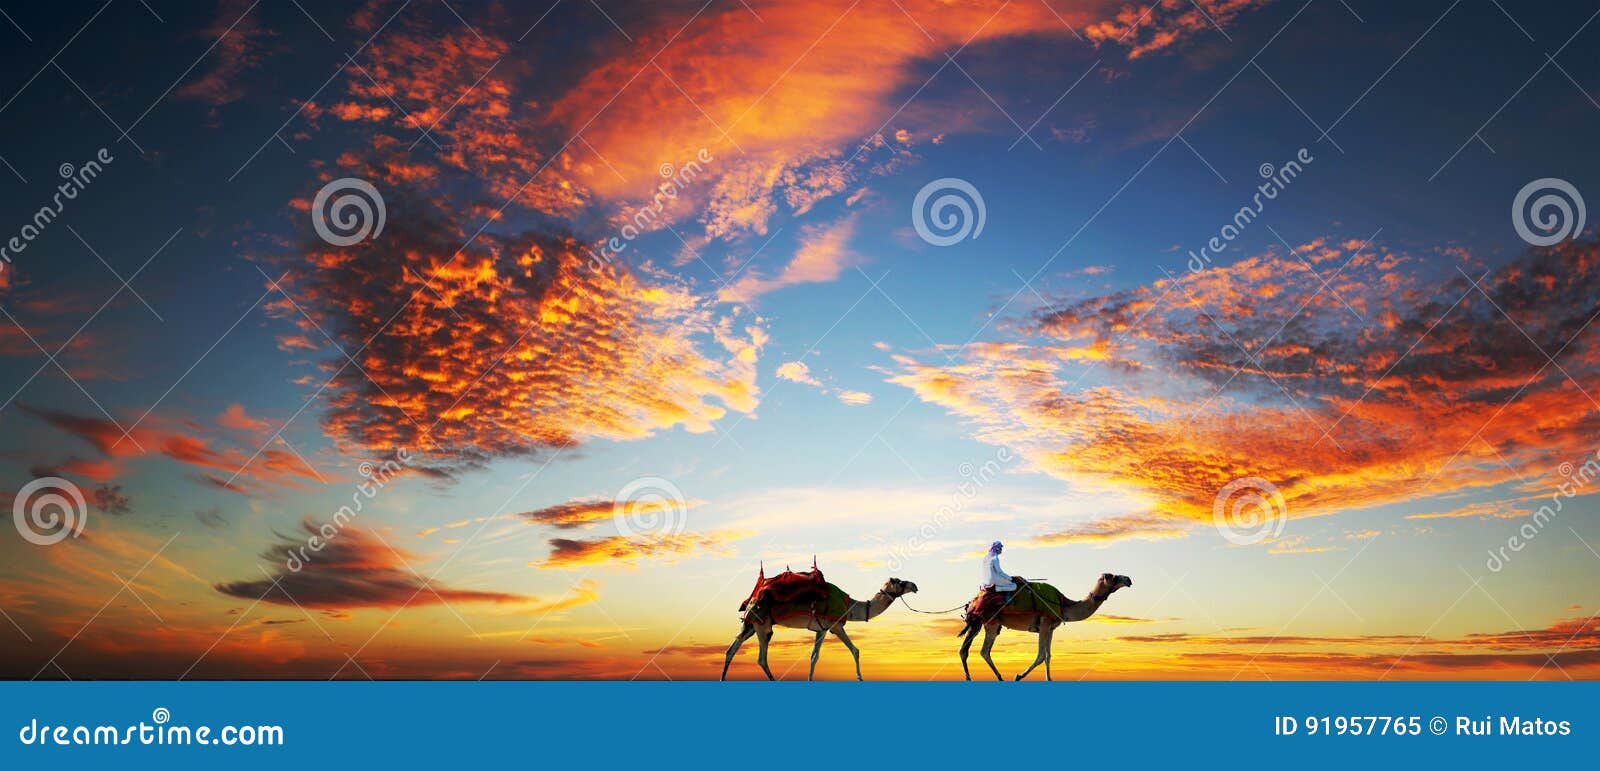 camels on a dubai beach under a dramatic sky